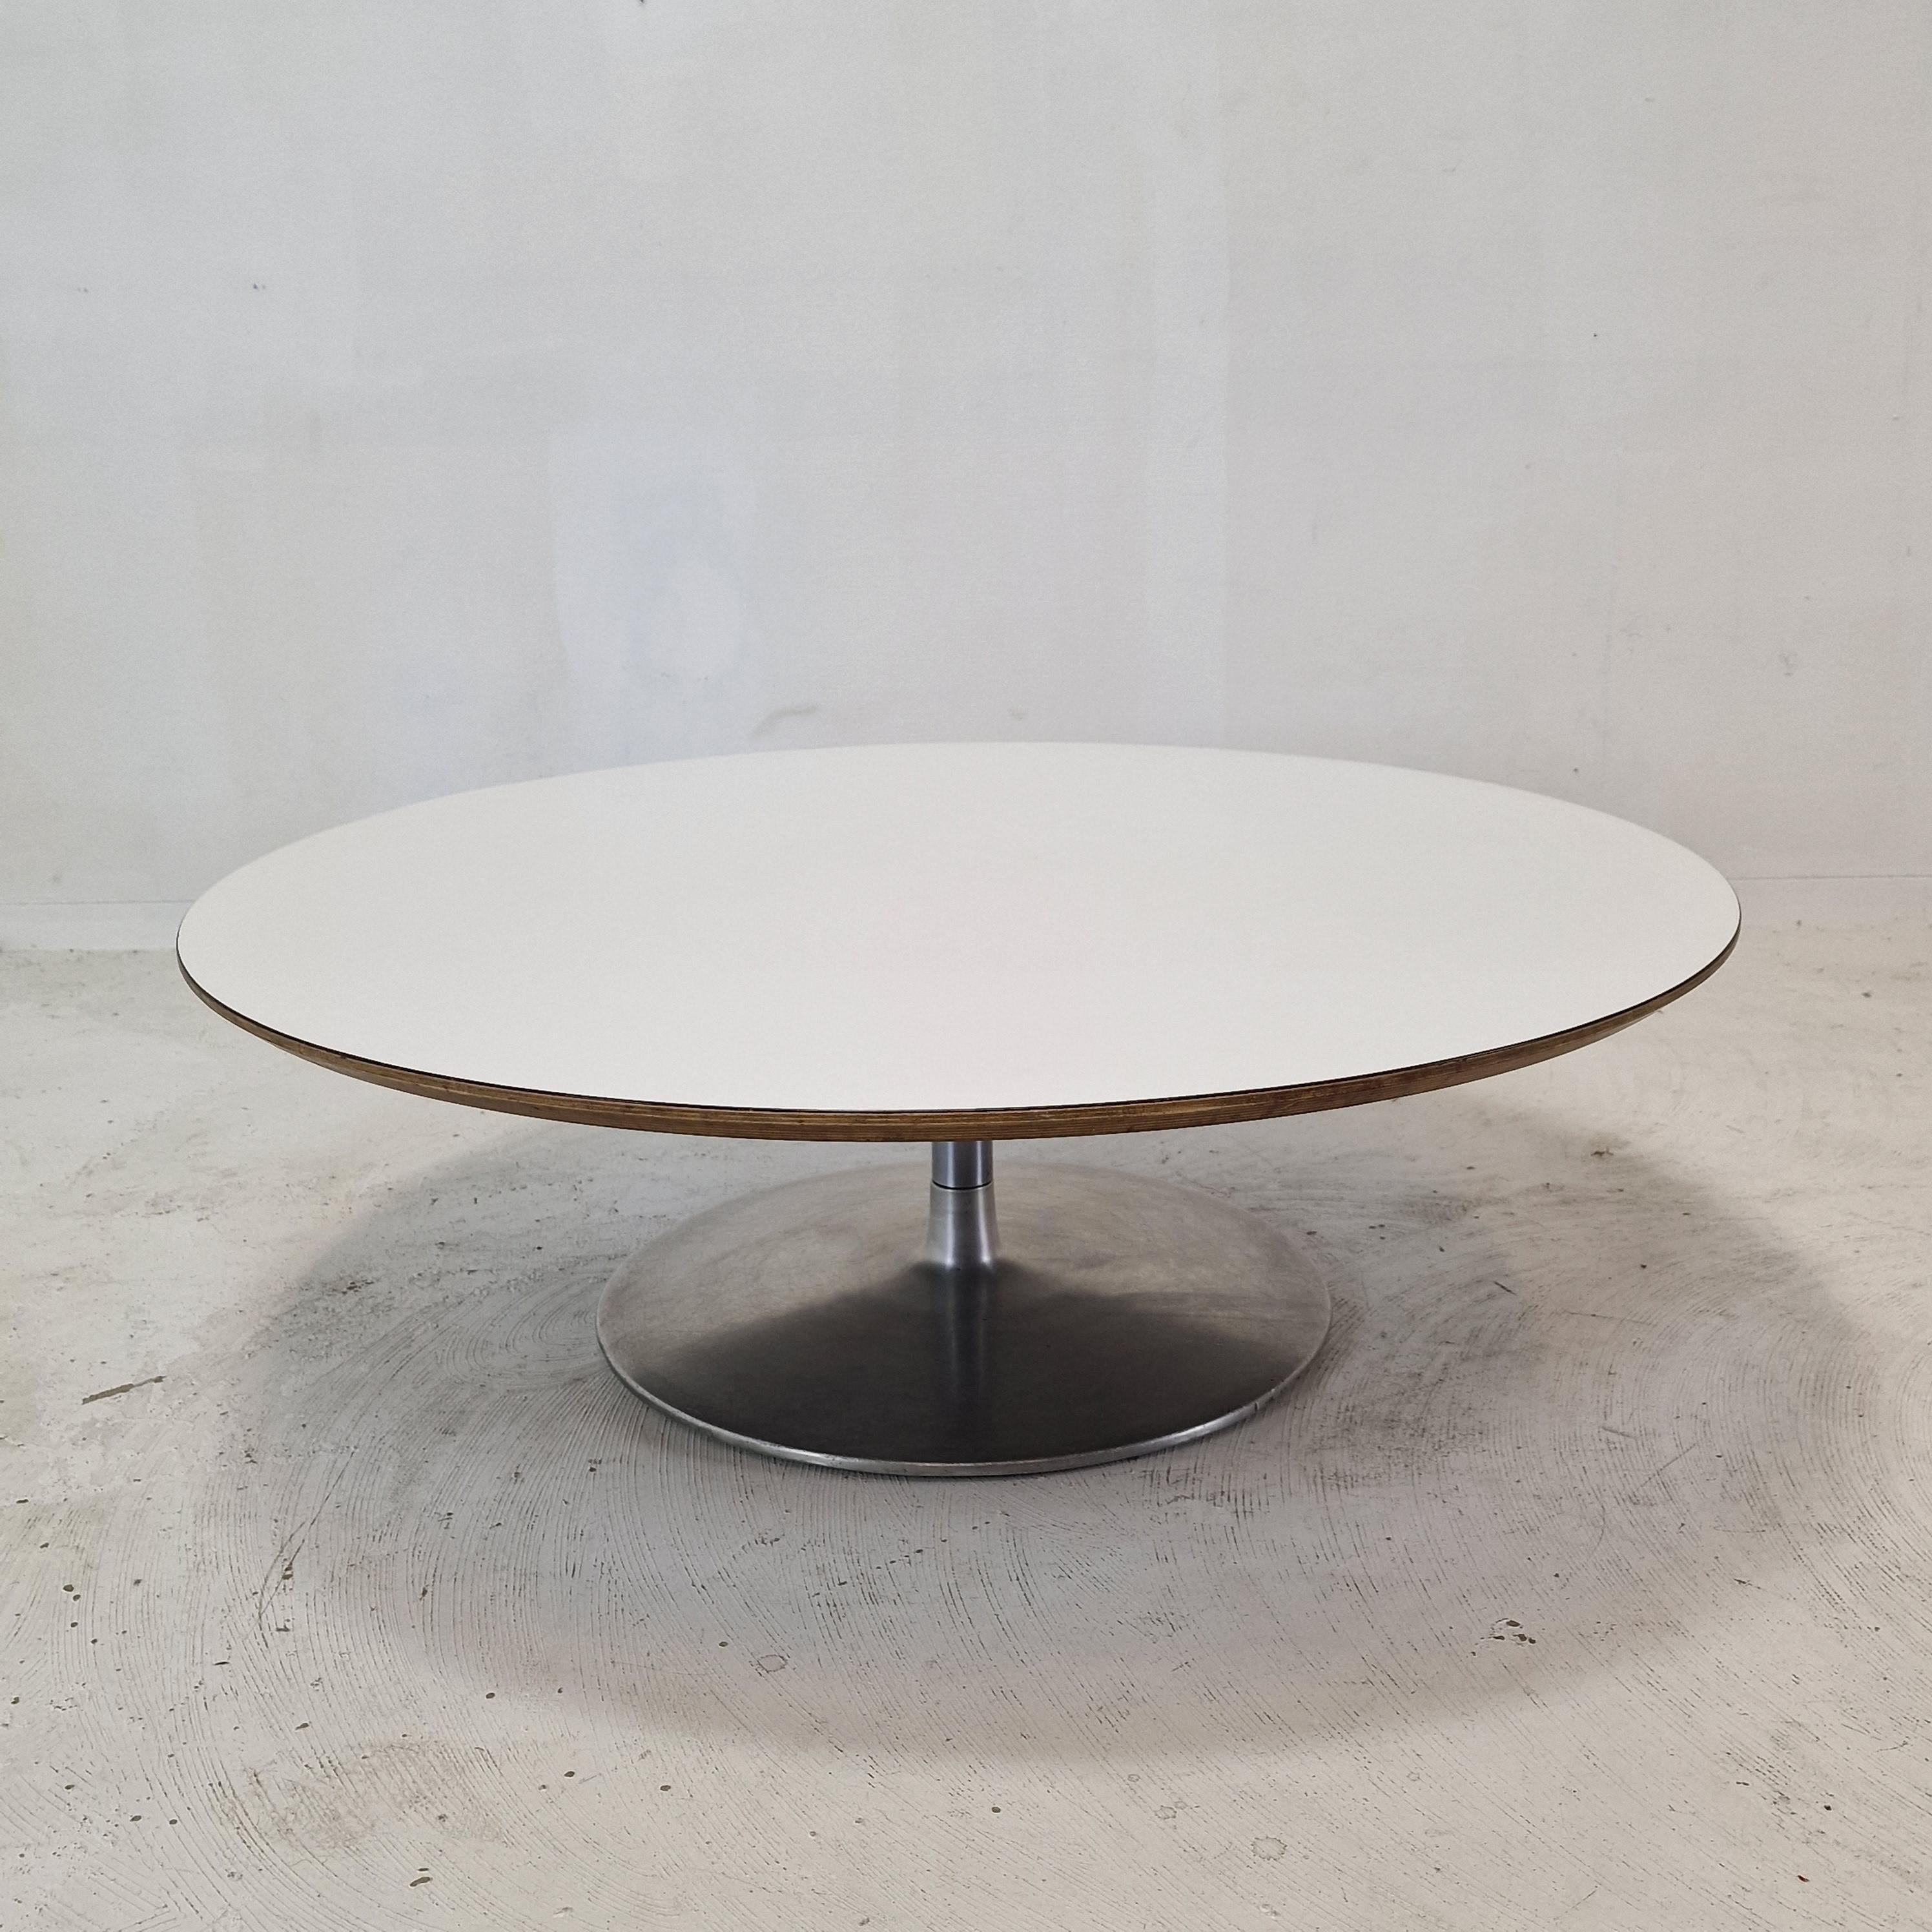 Très belle table basse ronde, conçue par Pierre Paulin dans les années 1960. 
Cette table particulière a été fabriquée à la fin des années 60.

Le nom de la table est 